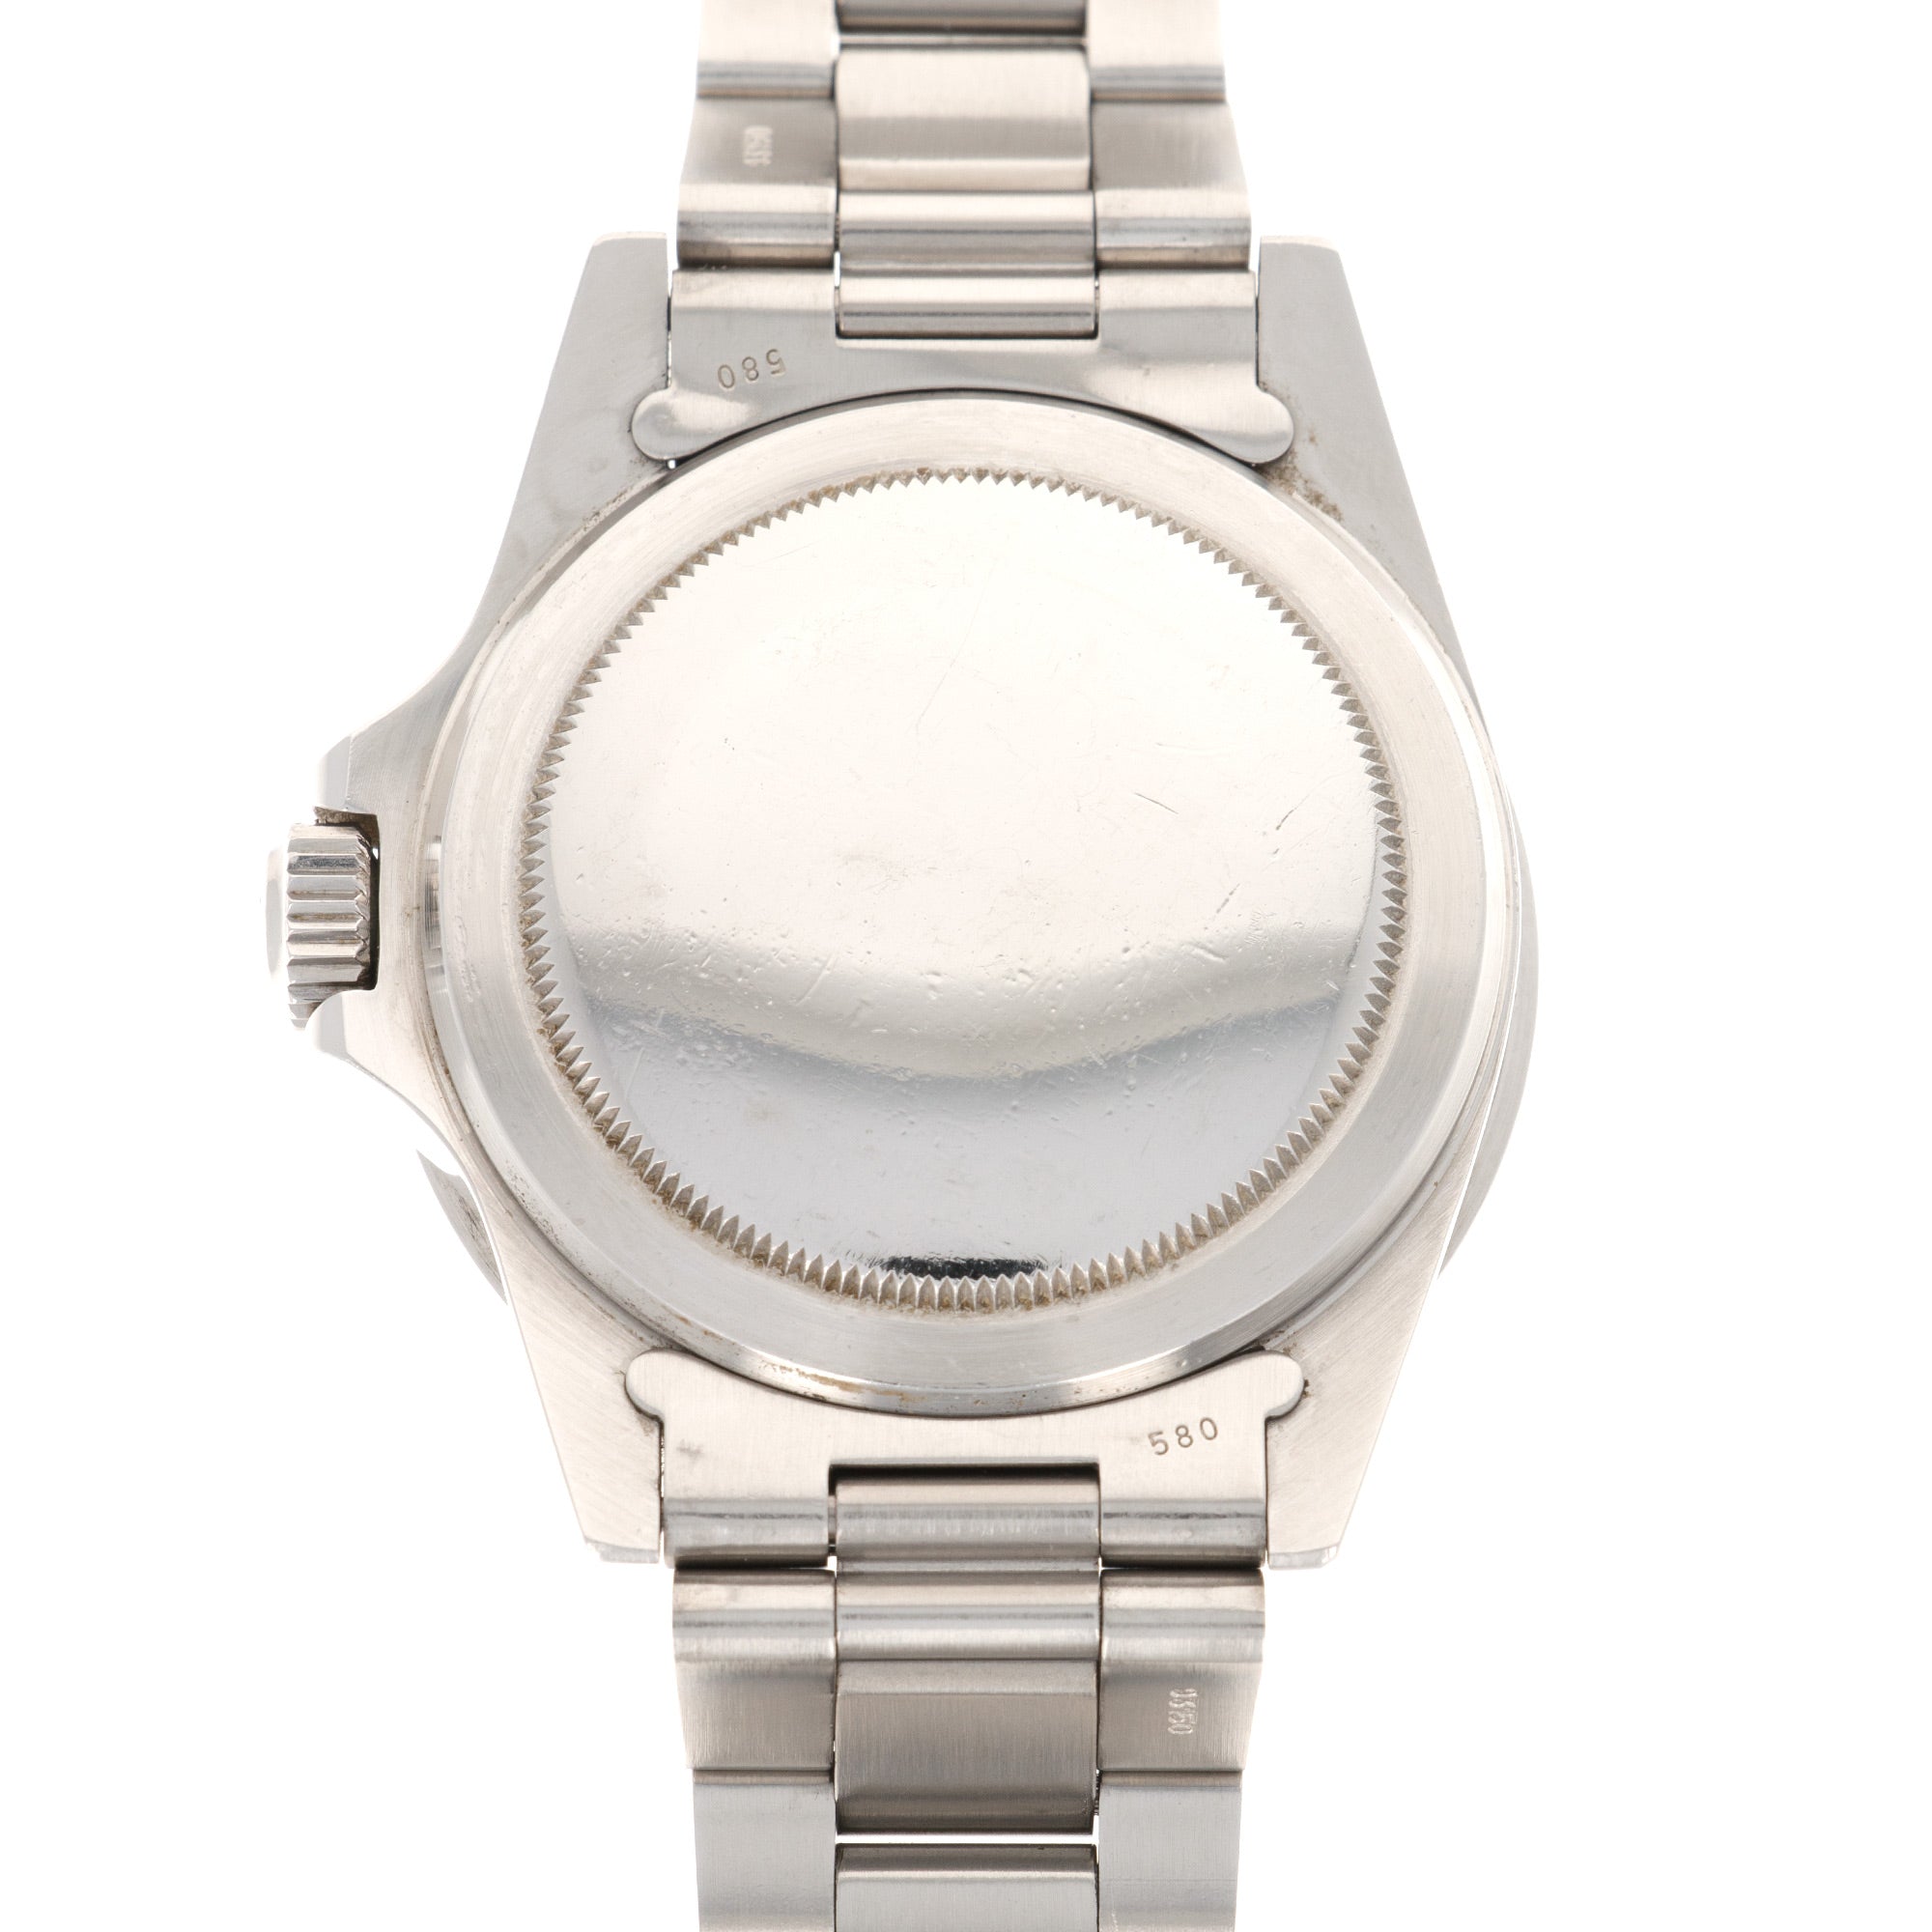 Rolex - Rolex Submariner Watch Ref. 5513, from 1984 - The Keystone Watches